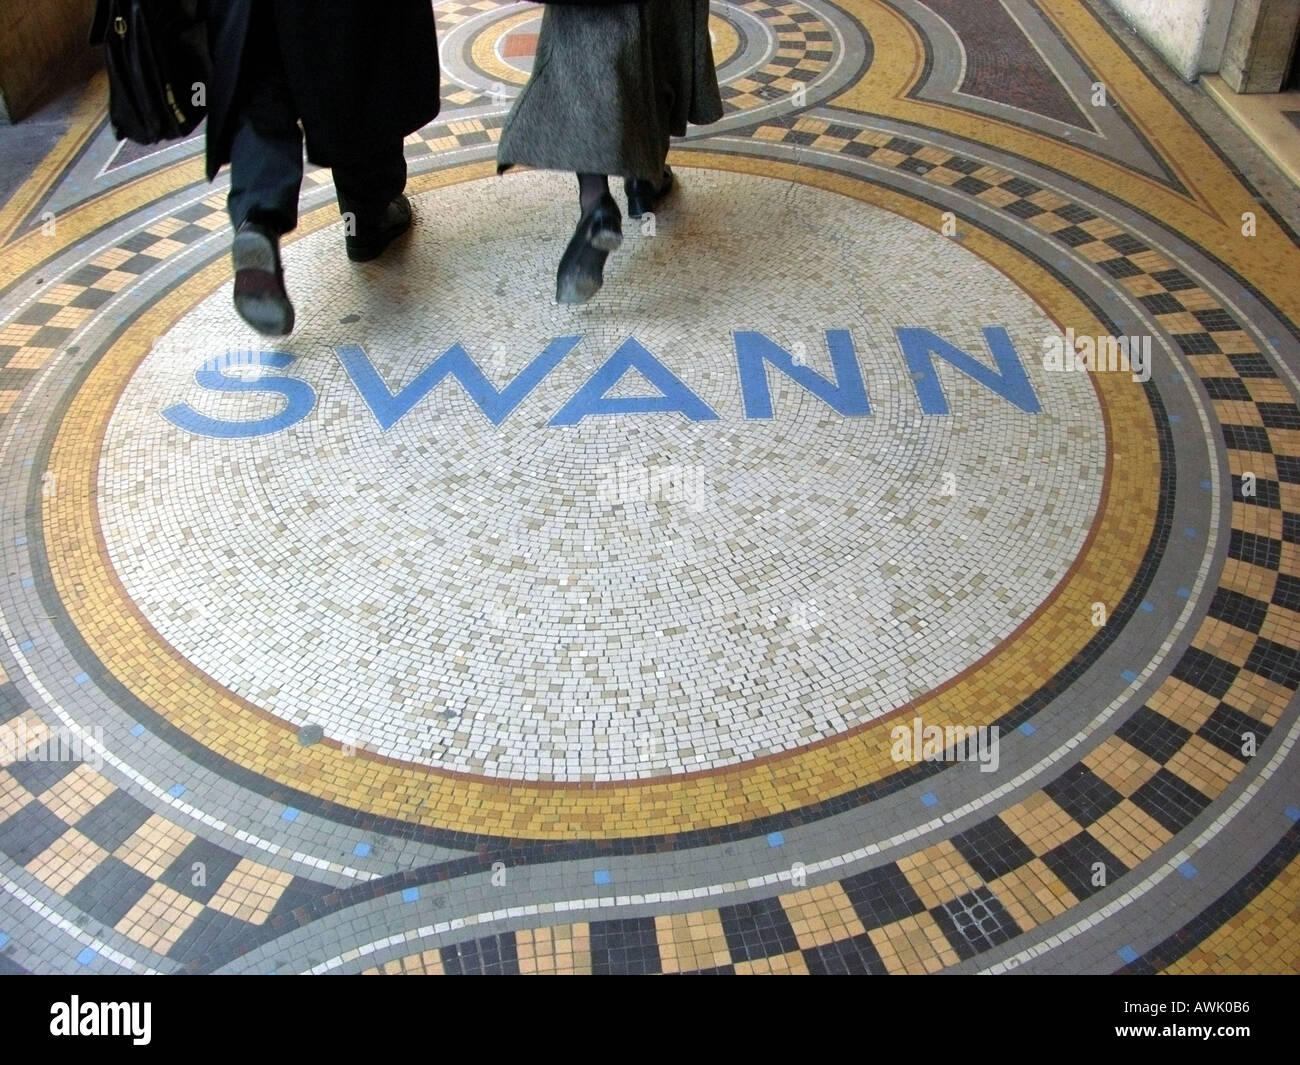 france ile de france paris rue de castiglione art nouveau mosaic pavement with the name swann and couple passing over it Stock Photo